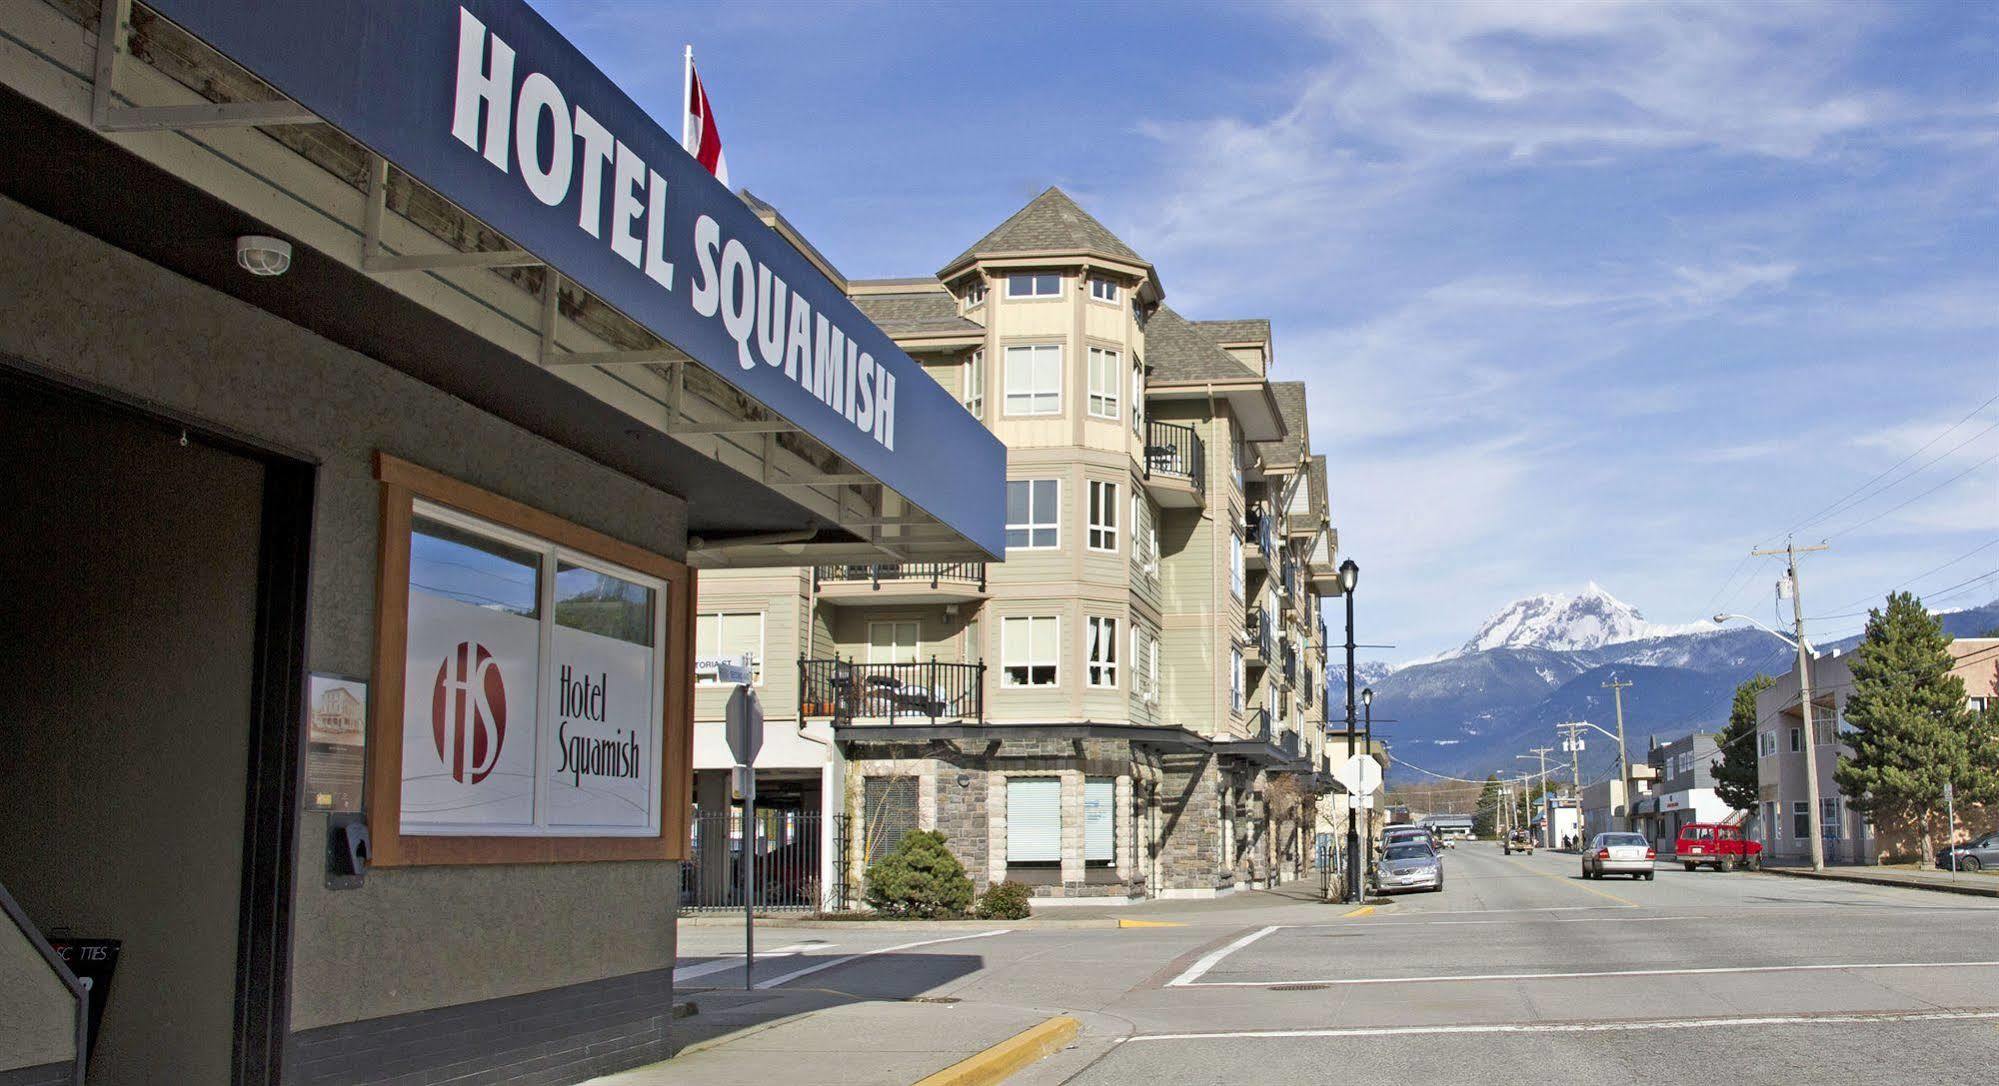 Hotel Squamish Exterior photo